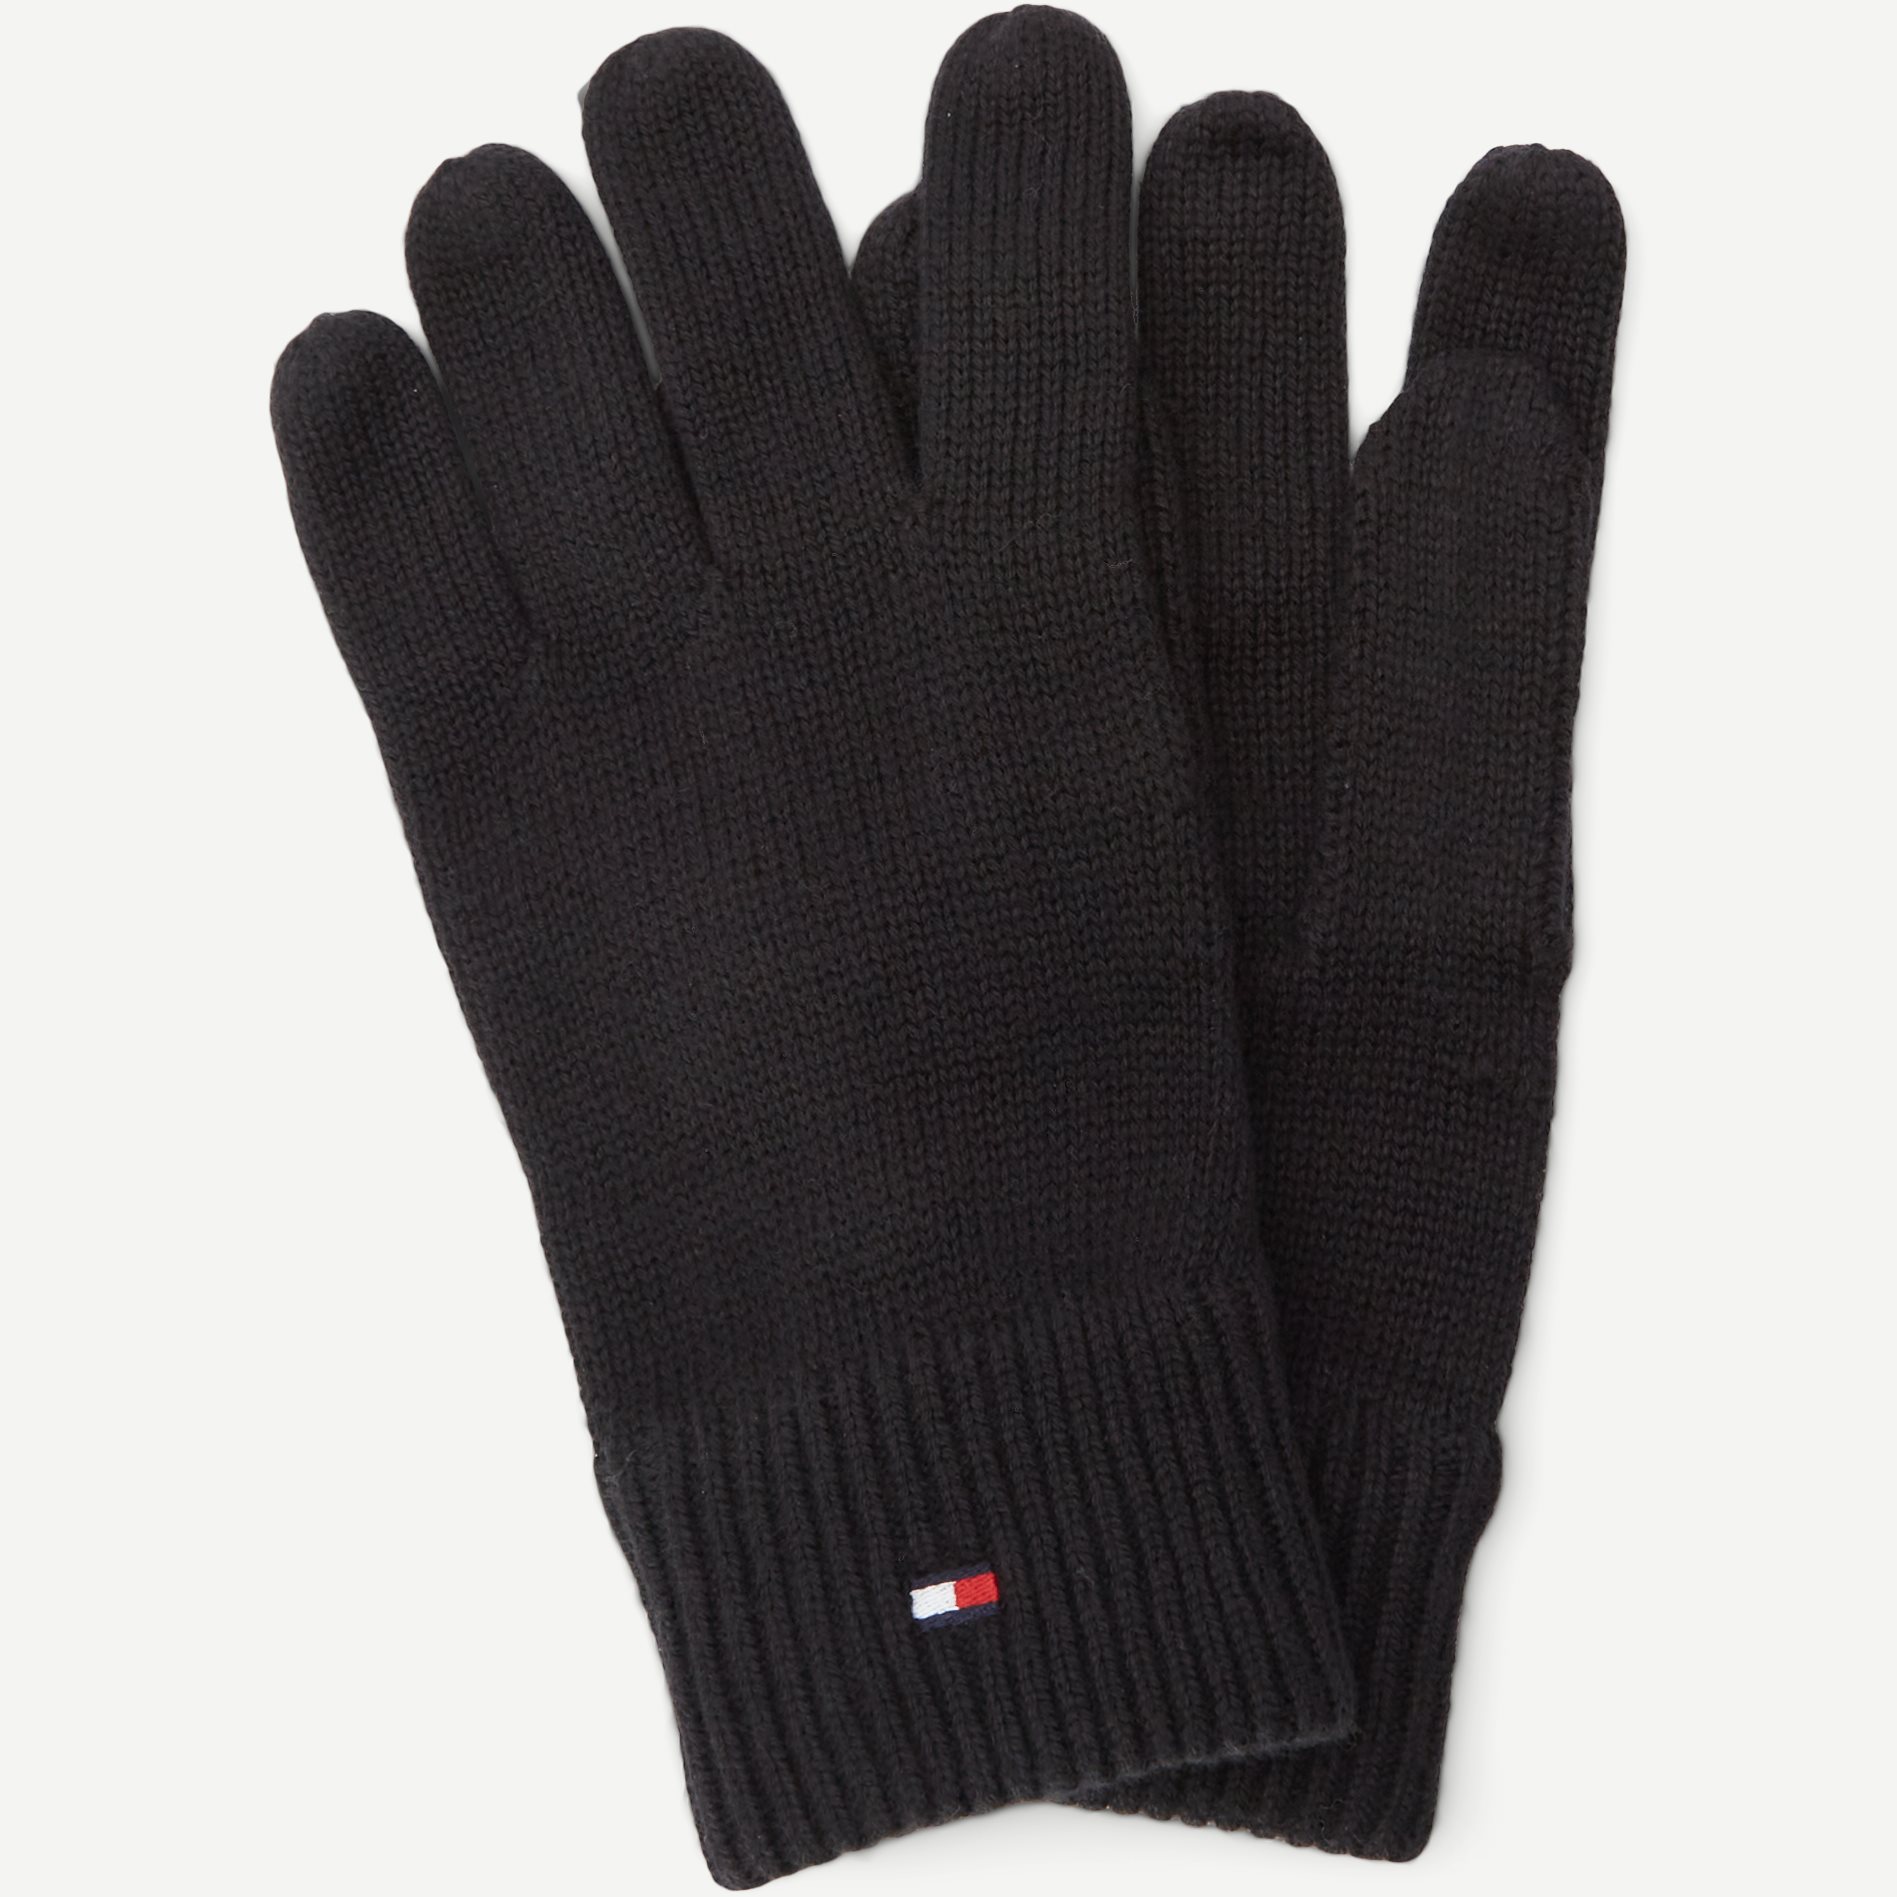 Handschuhe aus Pimabaumwolle - Handschuhe - Schwarz